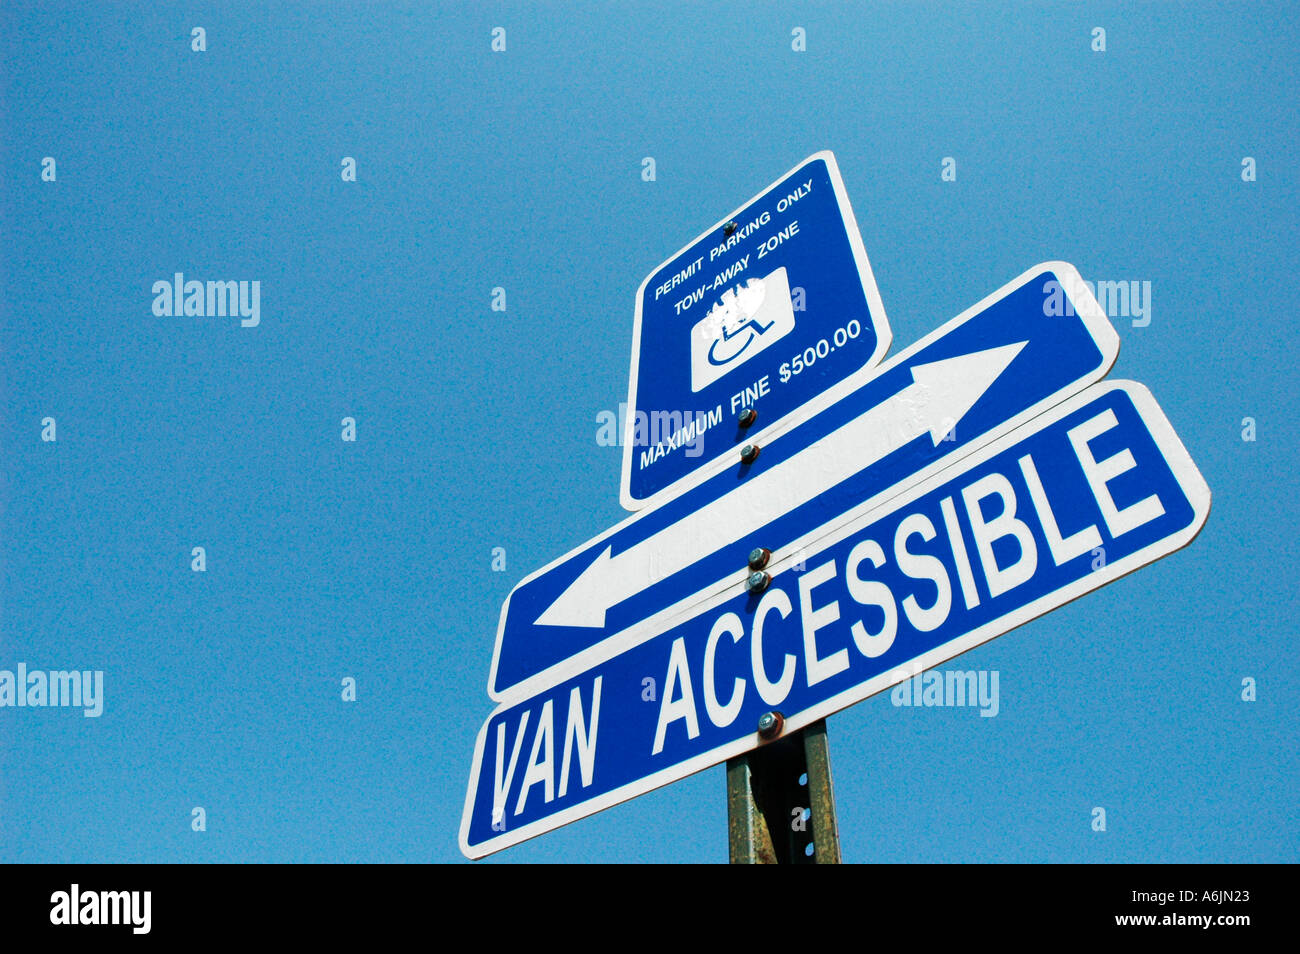 Personnes handicapées et van accessible pour les permis de stationnement avec accès handicapés moteurs Banque D'Images